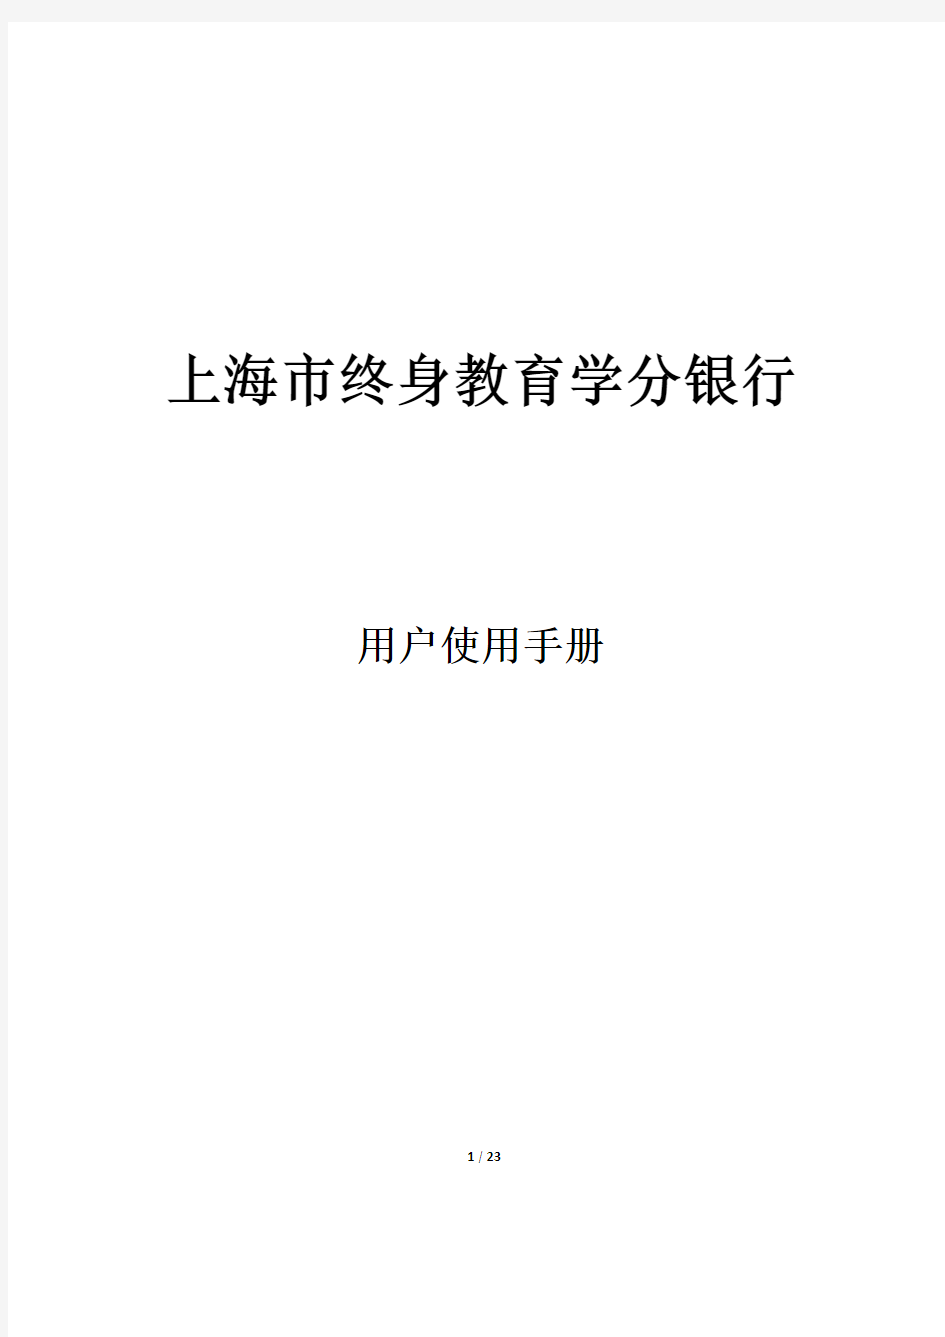 上海市终身教育学分银行用户使用手册VER_1.0